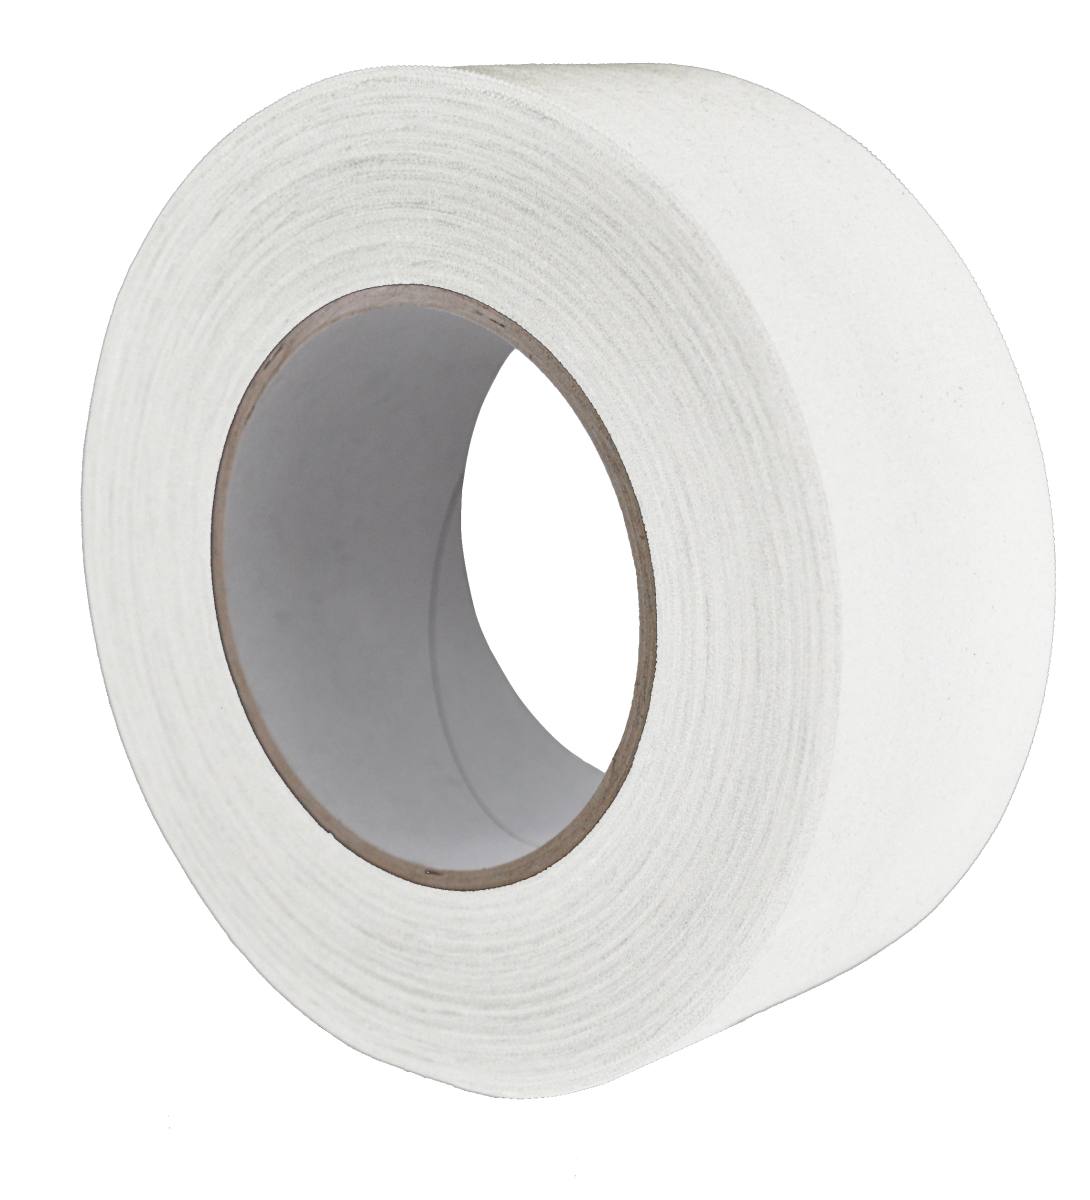 S-K-S 970 Raw fabric adhesive tape, 150 mm x 50 m, white, 0.240 mm